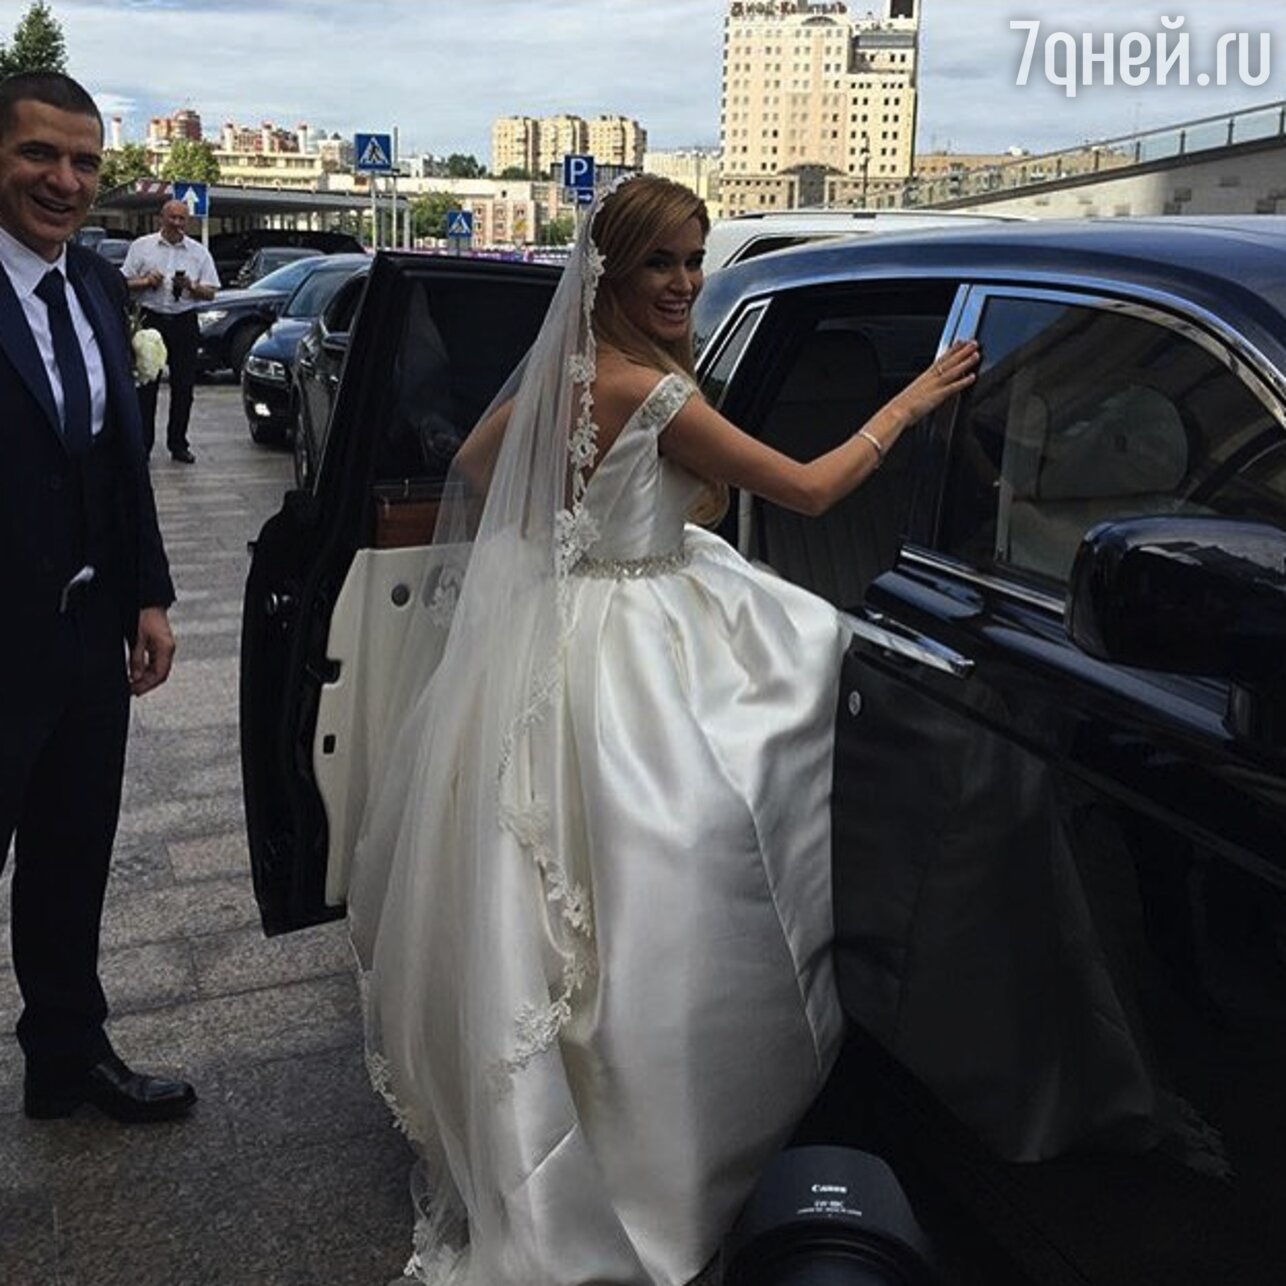 Свадьба Ксении Бородиной и Курбана Омарова в 2015 году